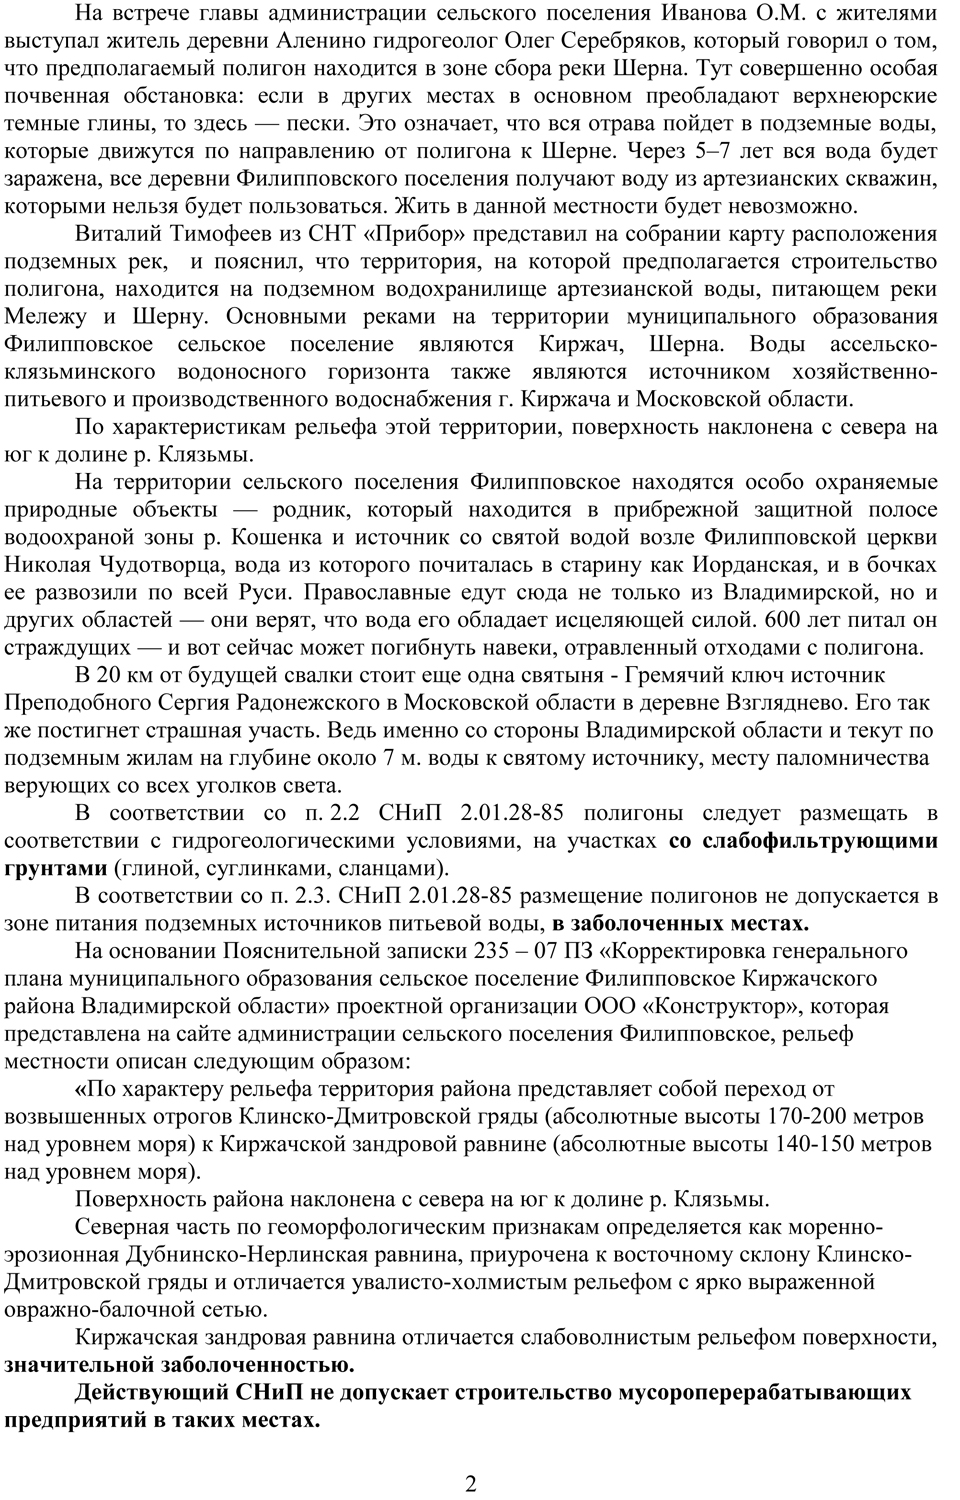 OTKRYTOE_OBRASchENIE_K_MINISTRU_PRIRODNYKh_RESURSOV_I_EKOLOGII-2.jpg